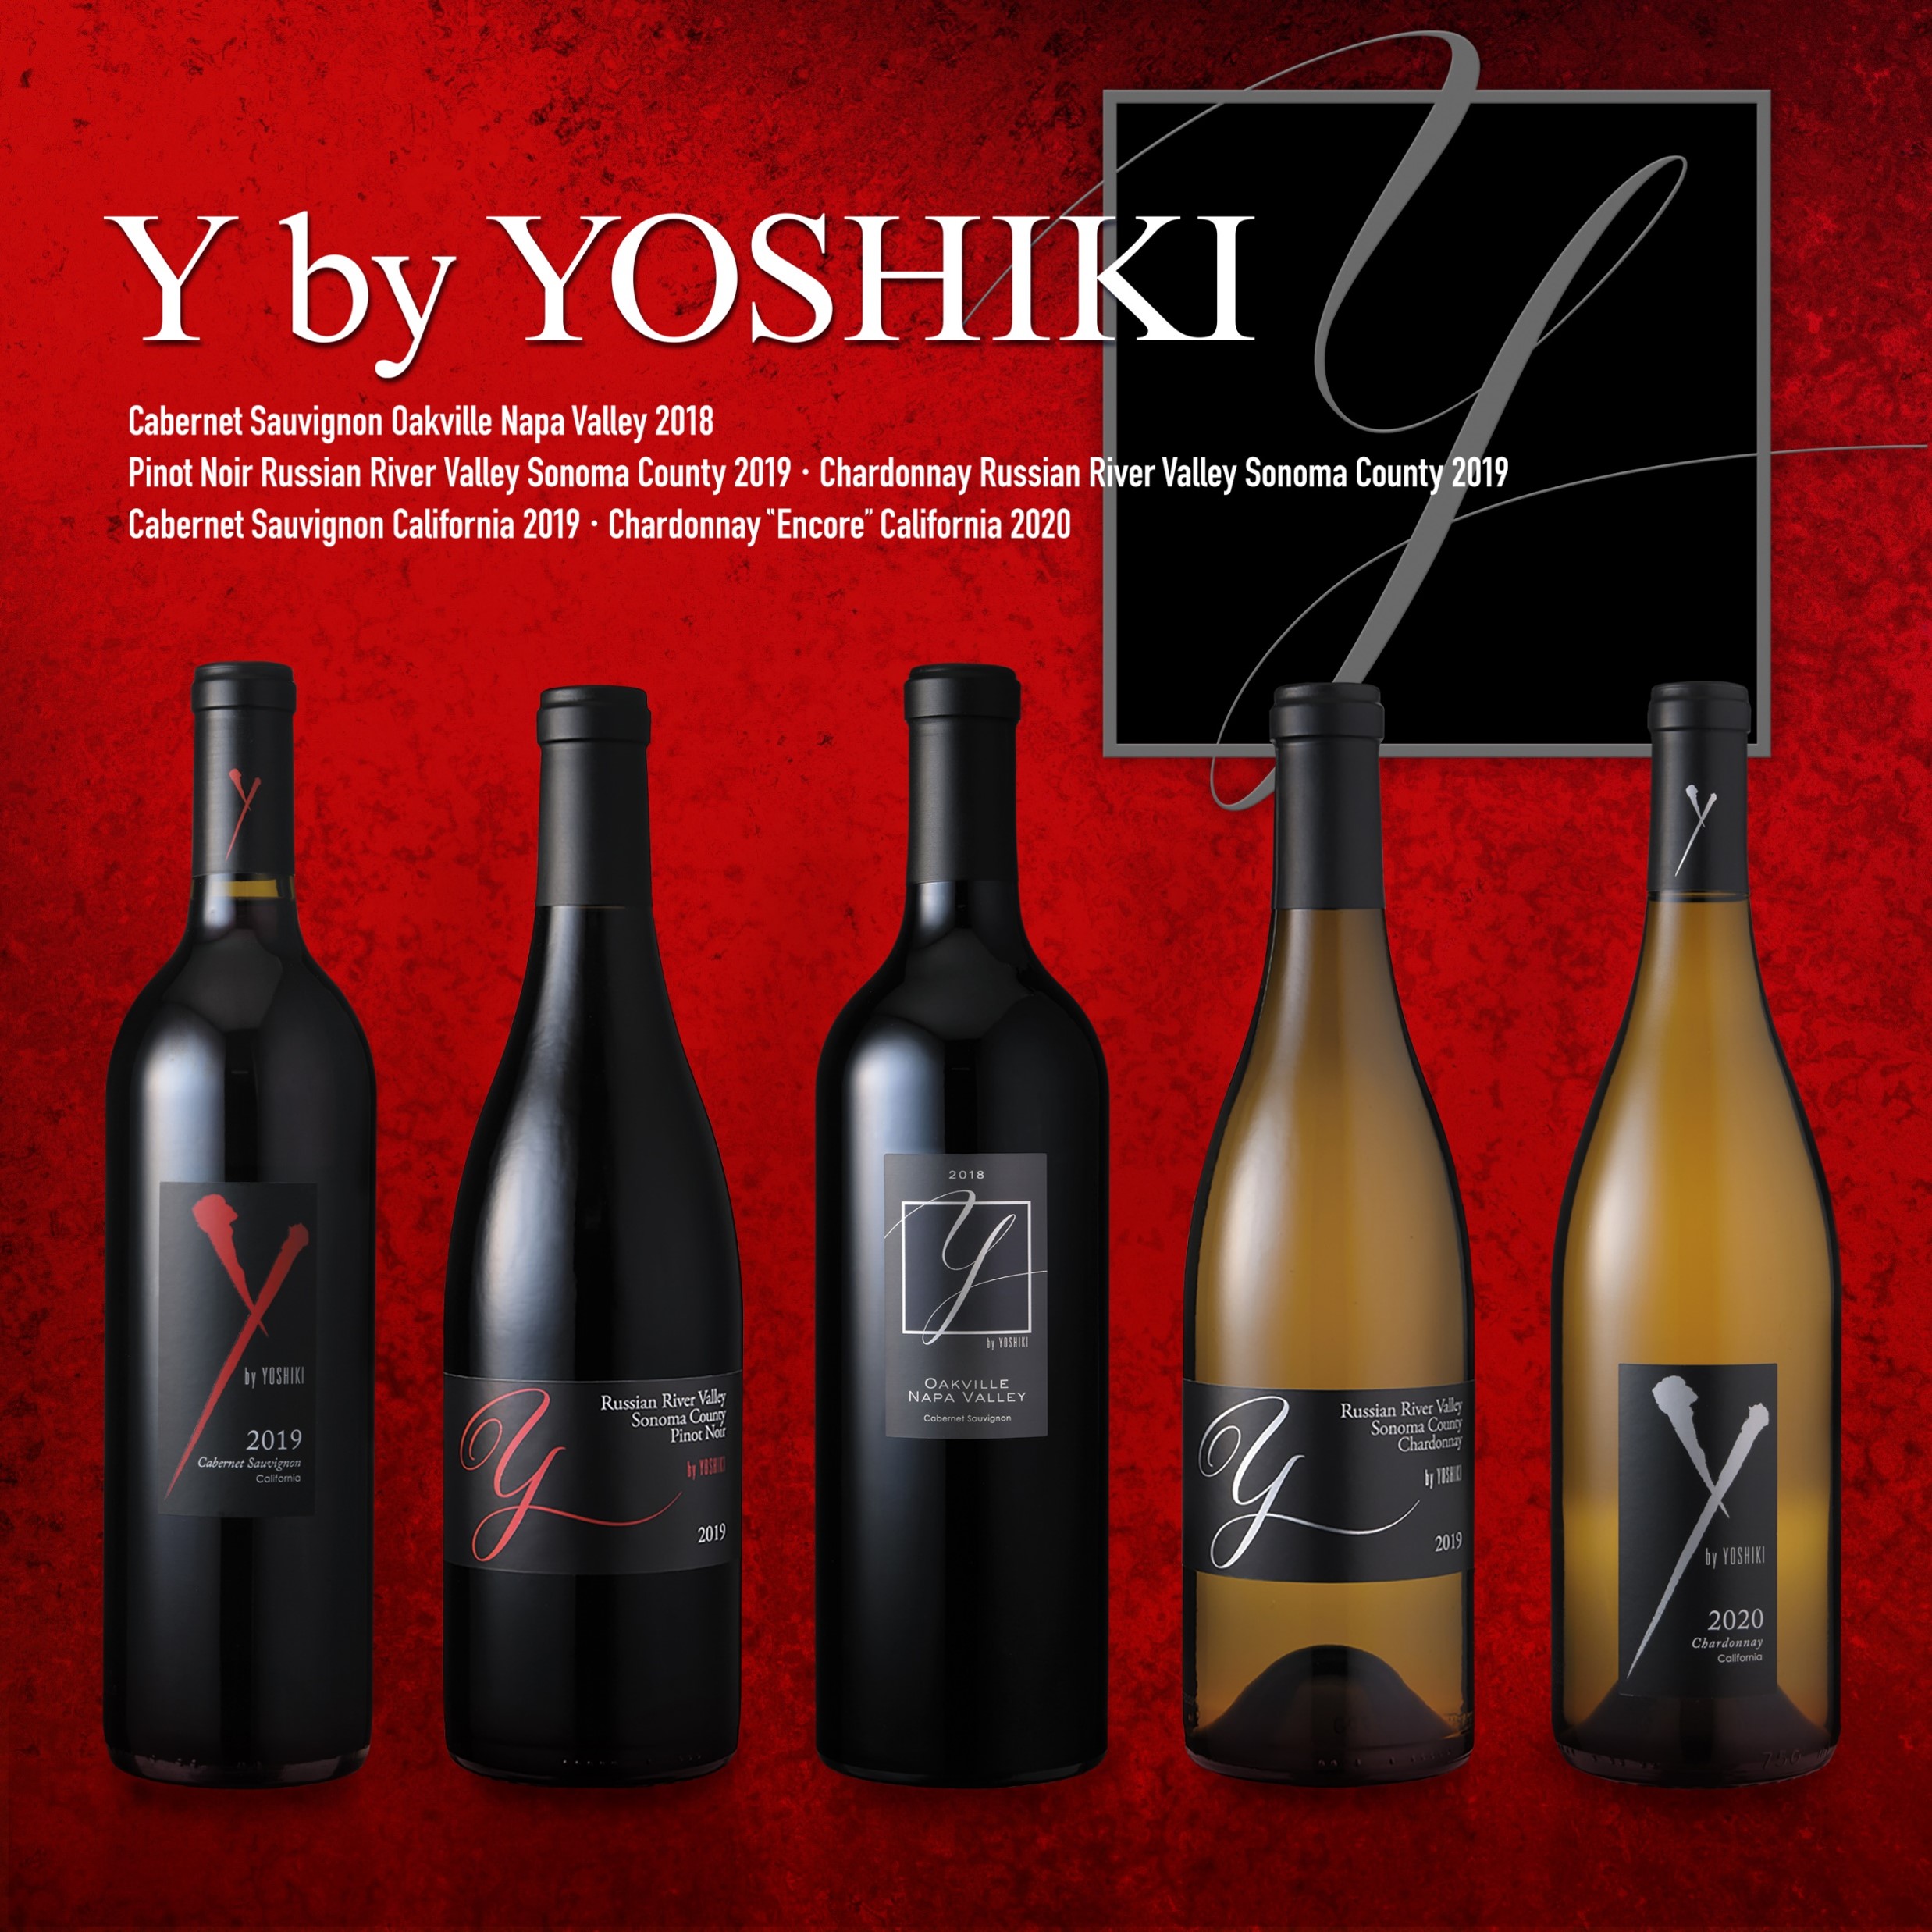 YOSHIKIワイン2016(オークヴィル) １本 - ワイン